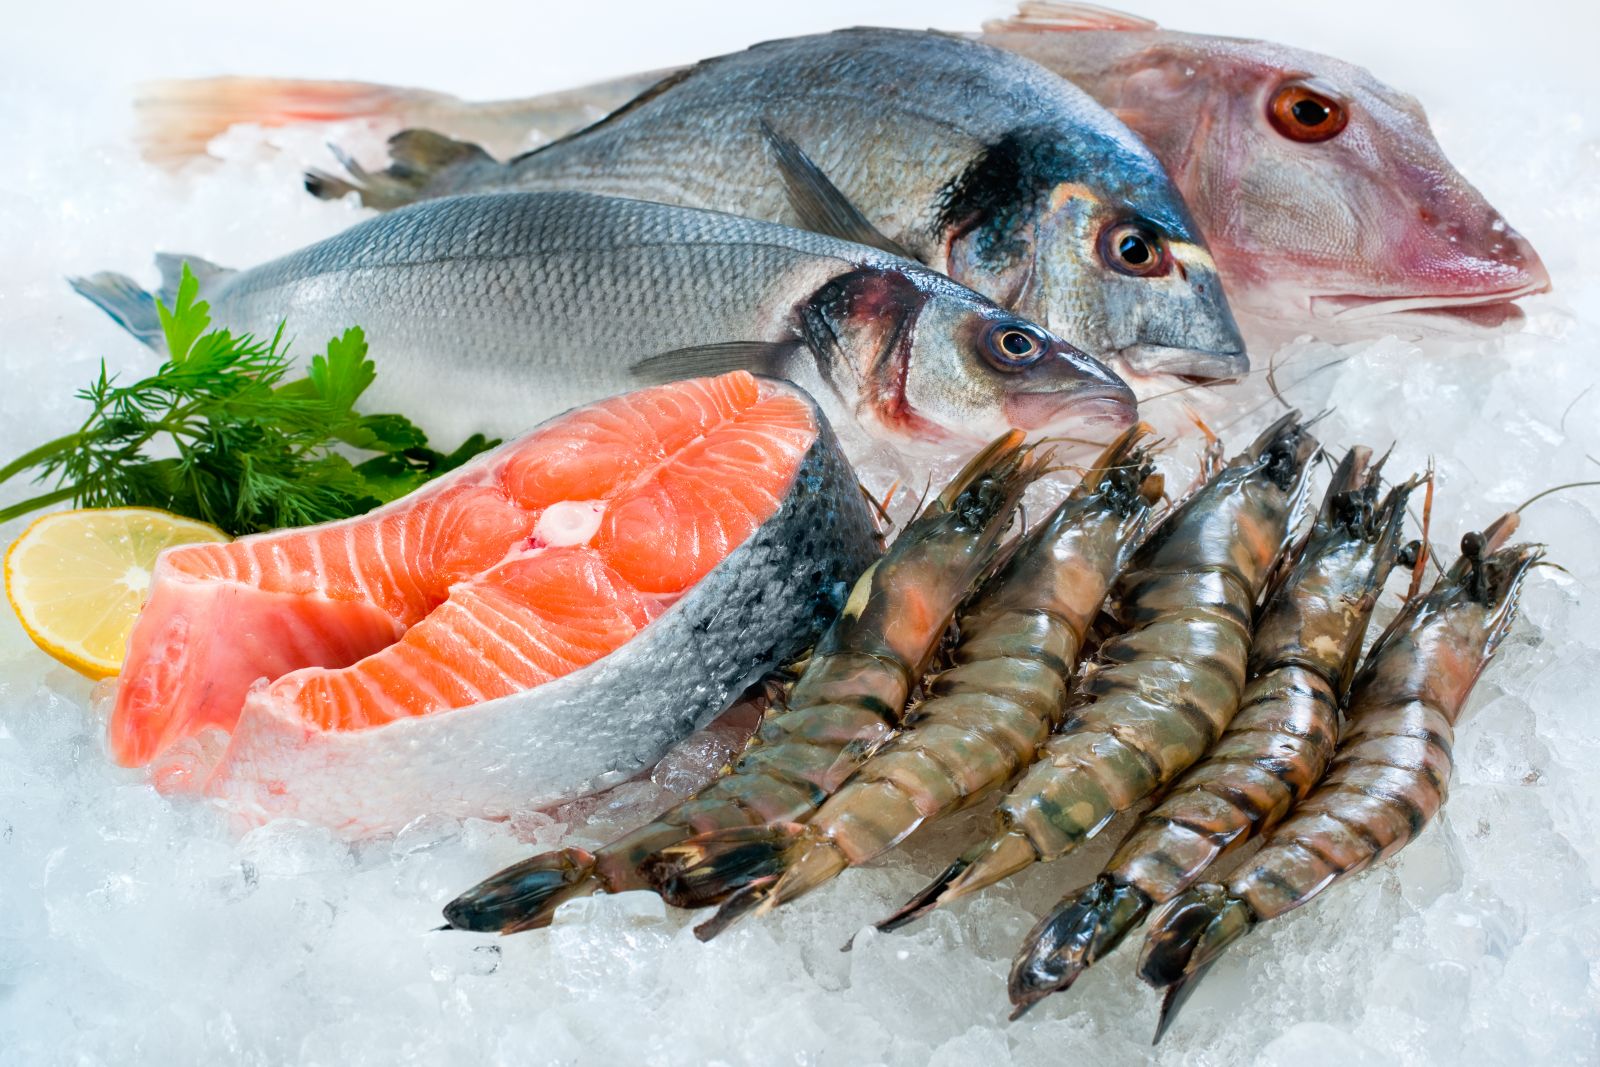 Có những loại hải sản nào được ưa chuộng khi hấp?
